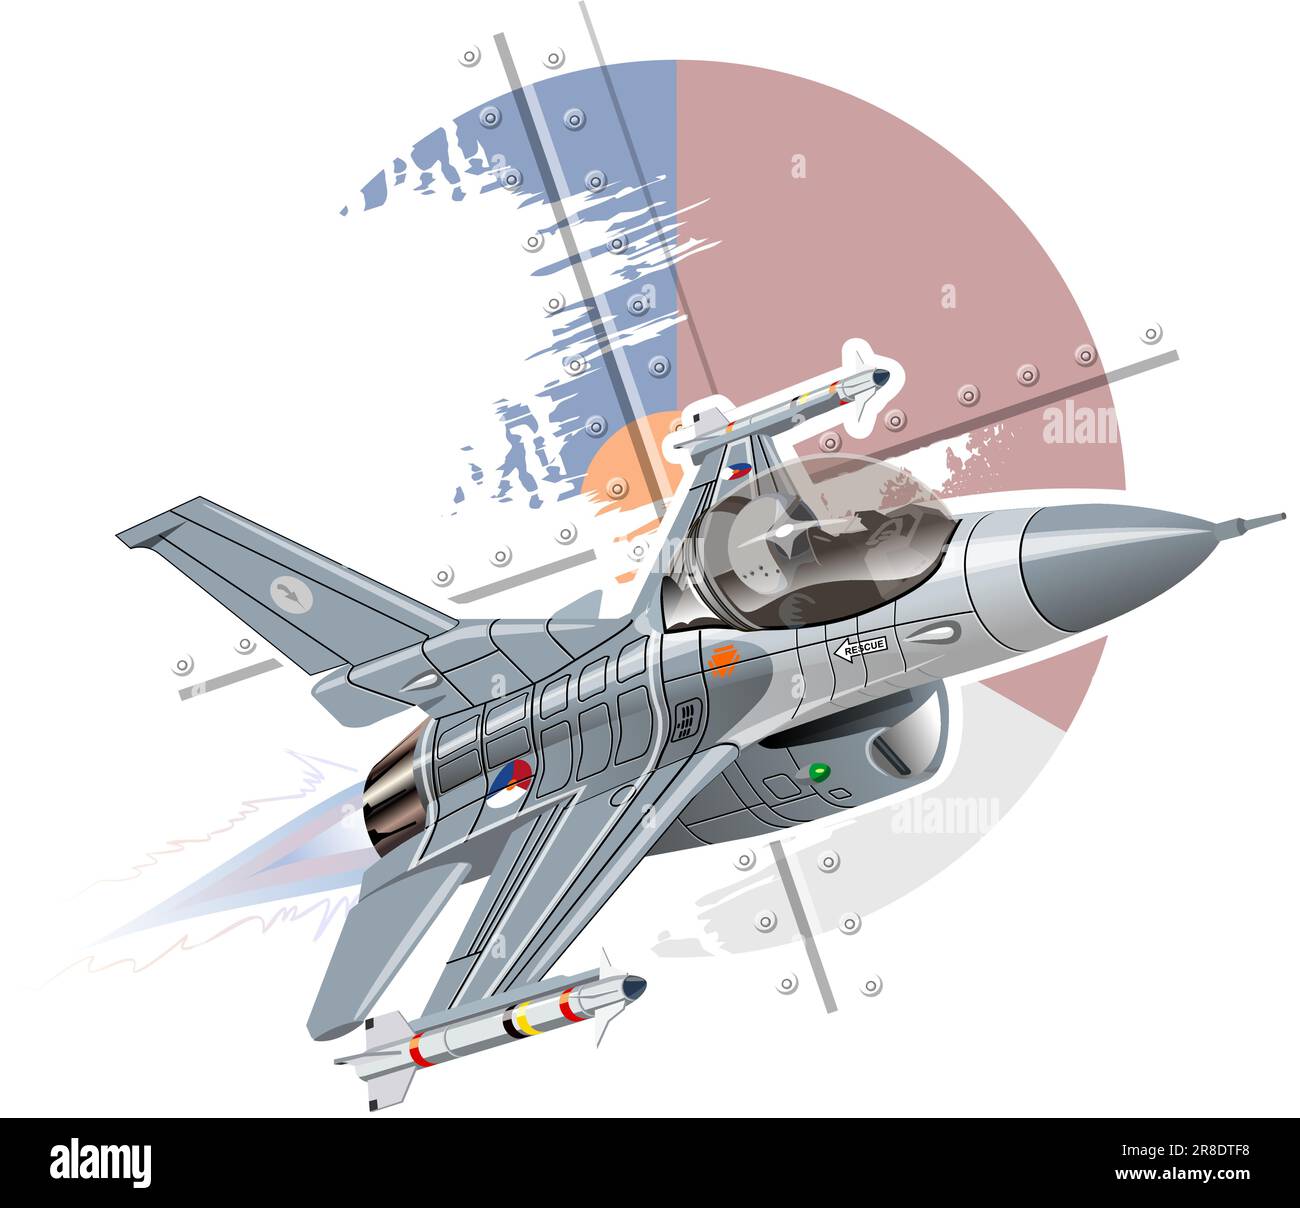 Vektor Cartoon Military Jet Fighter Flugzeug. Verfügbares EPS-10-Vektorformat, das durch Gruppen und Ebenen getrennt ist, für eine einfache Bearbeitung Stock Vektor